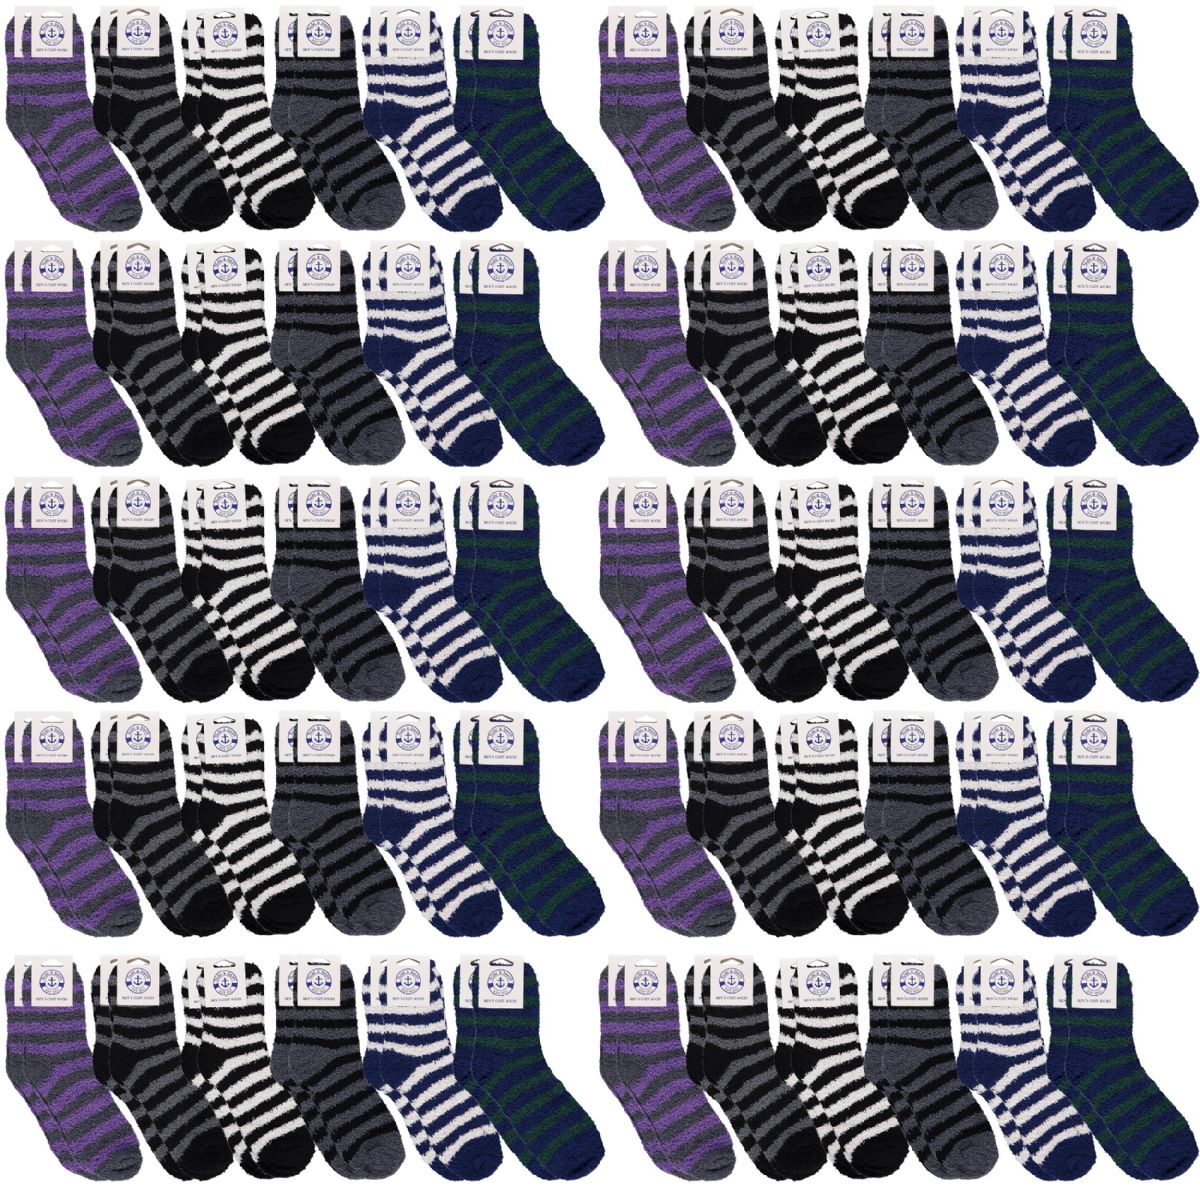 60 pairs of Yacht & Smith Men's Warm Cozy Fuzzy Socks, Stripe Pattern Size 10-13